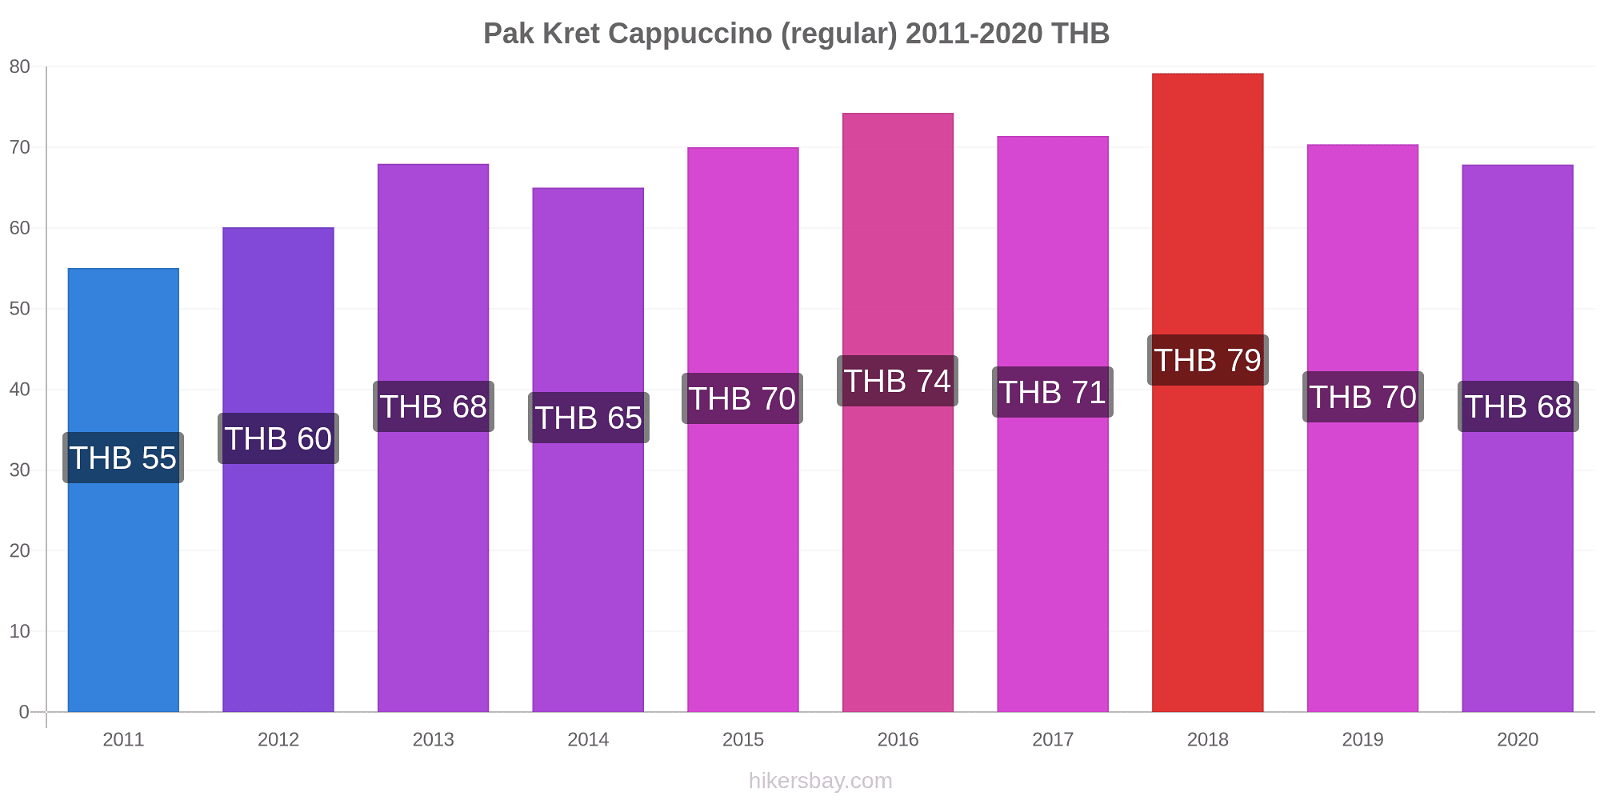 Pak Kret variação de preço Capuccino (regular) hikersbay.com